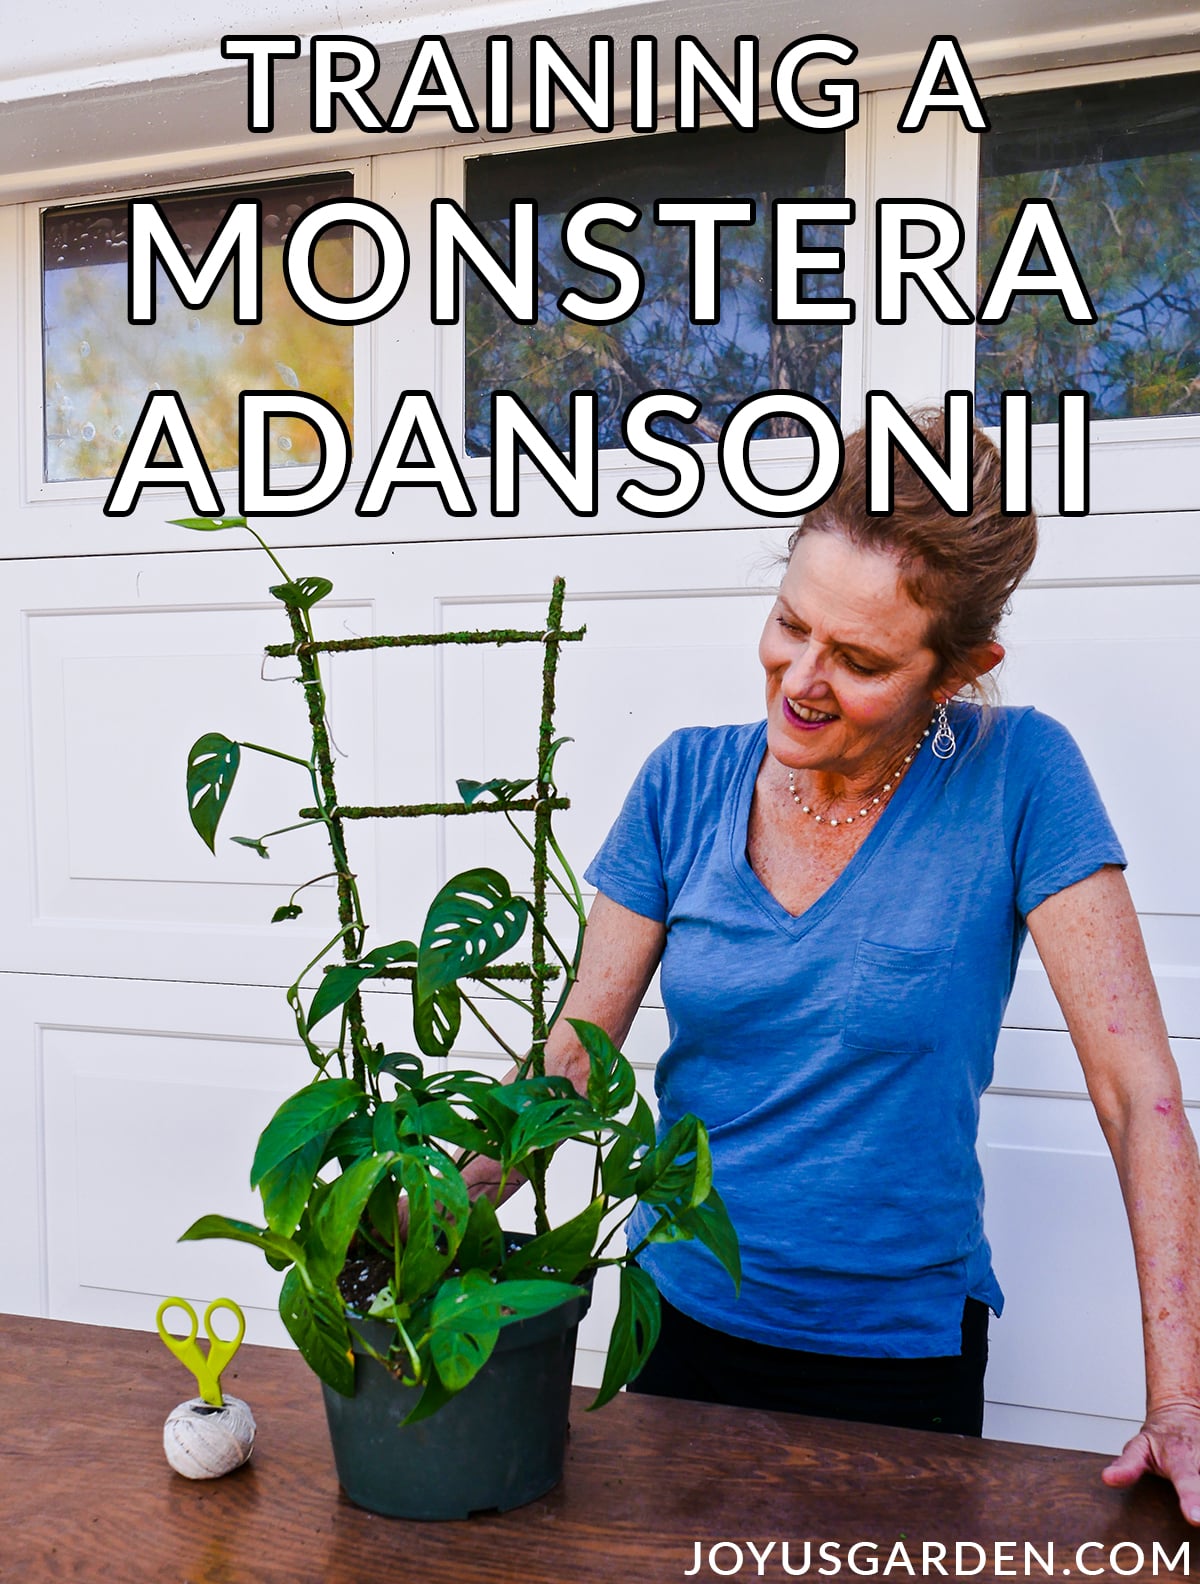  ತರಬೇತಿ Monstera Adansonii + ಎ ಮಾಸ್ ಟ್ರೆಲ್ಲಿಸ್ DIY